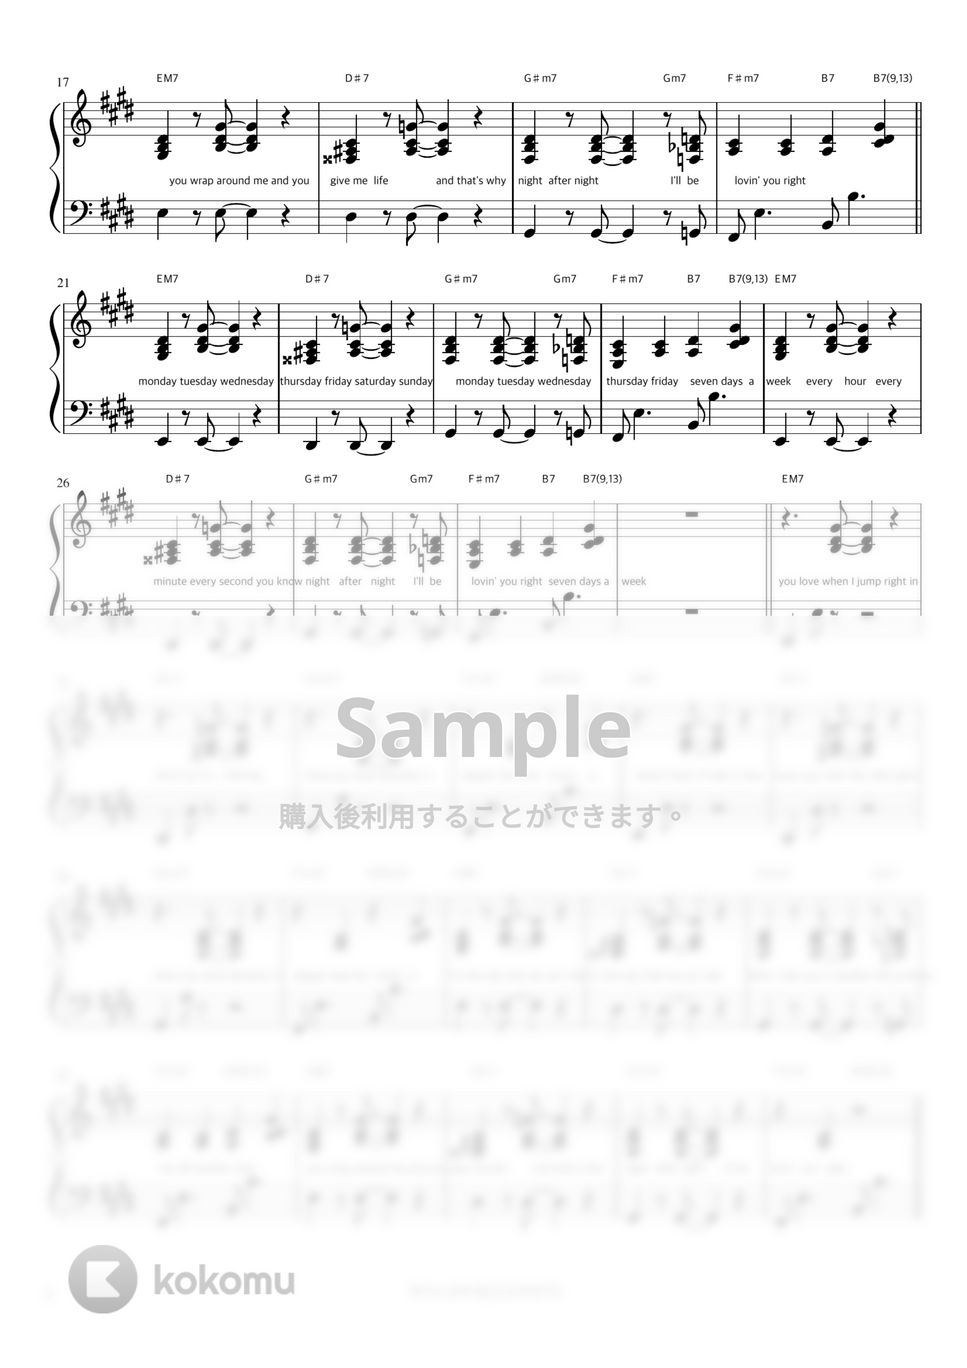 ジョングク - Seven (feat. Latto) (伴奏楽譜) by 피아노정류장